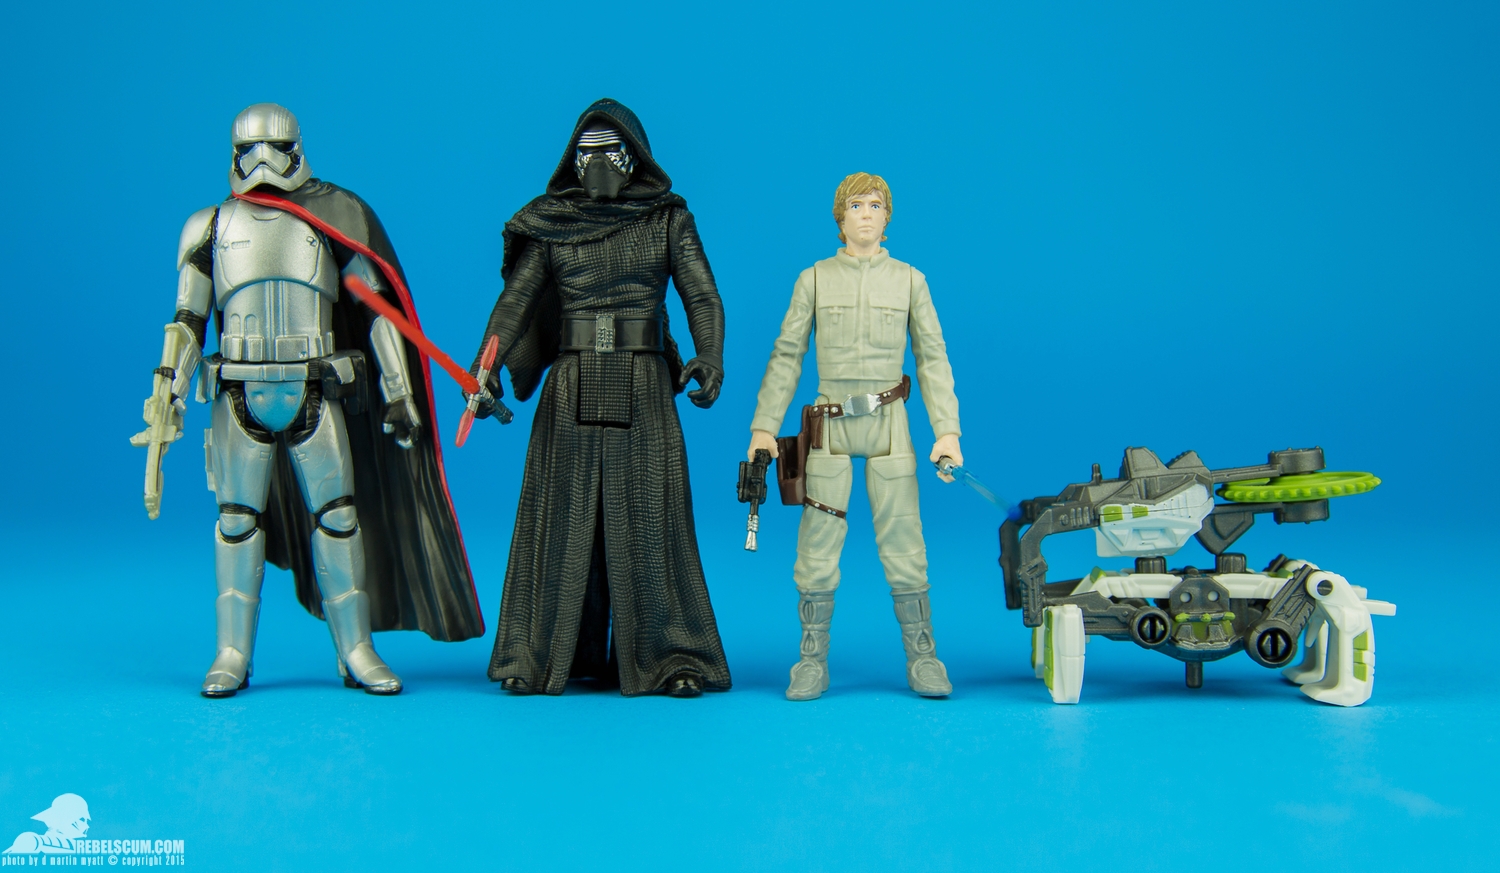 Luke-Skywalker-Star-Wars-The-Force-Awakens-Hasbro-008.jpg